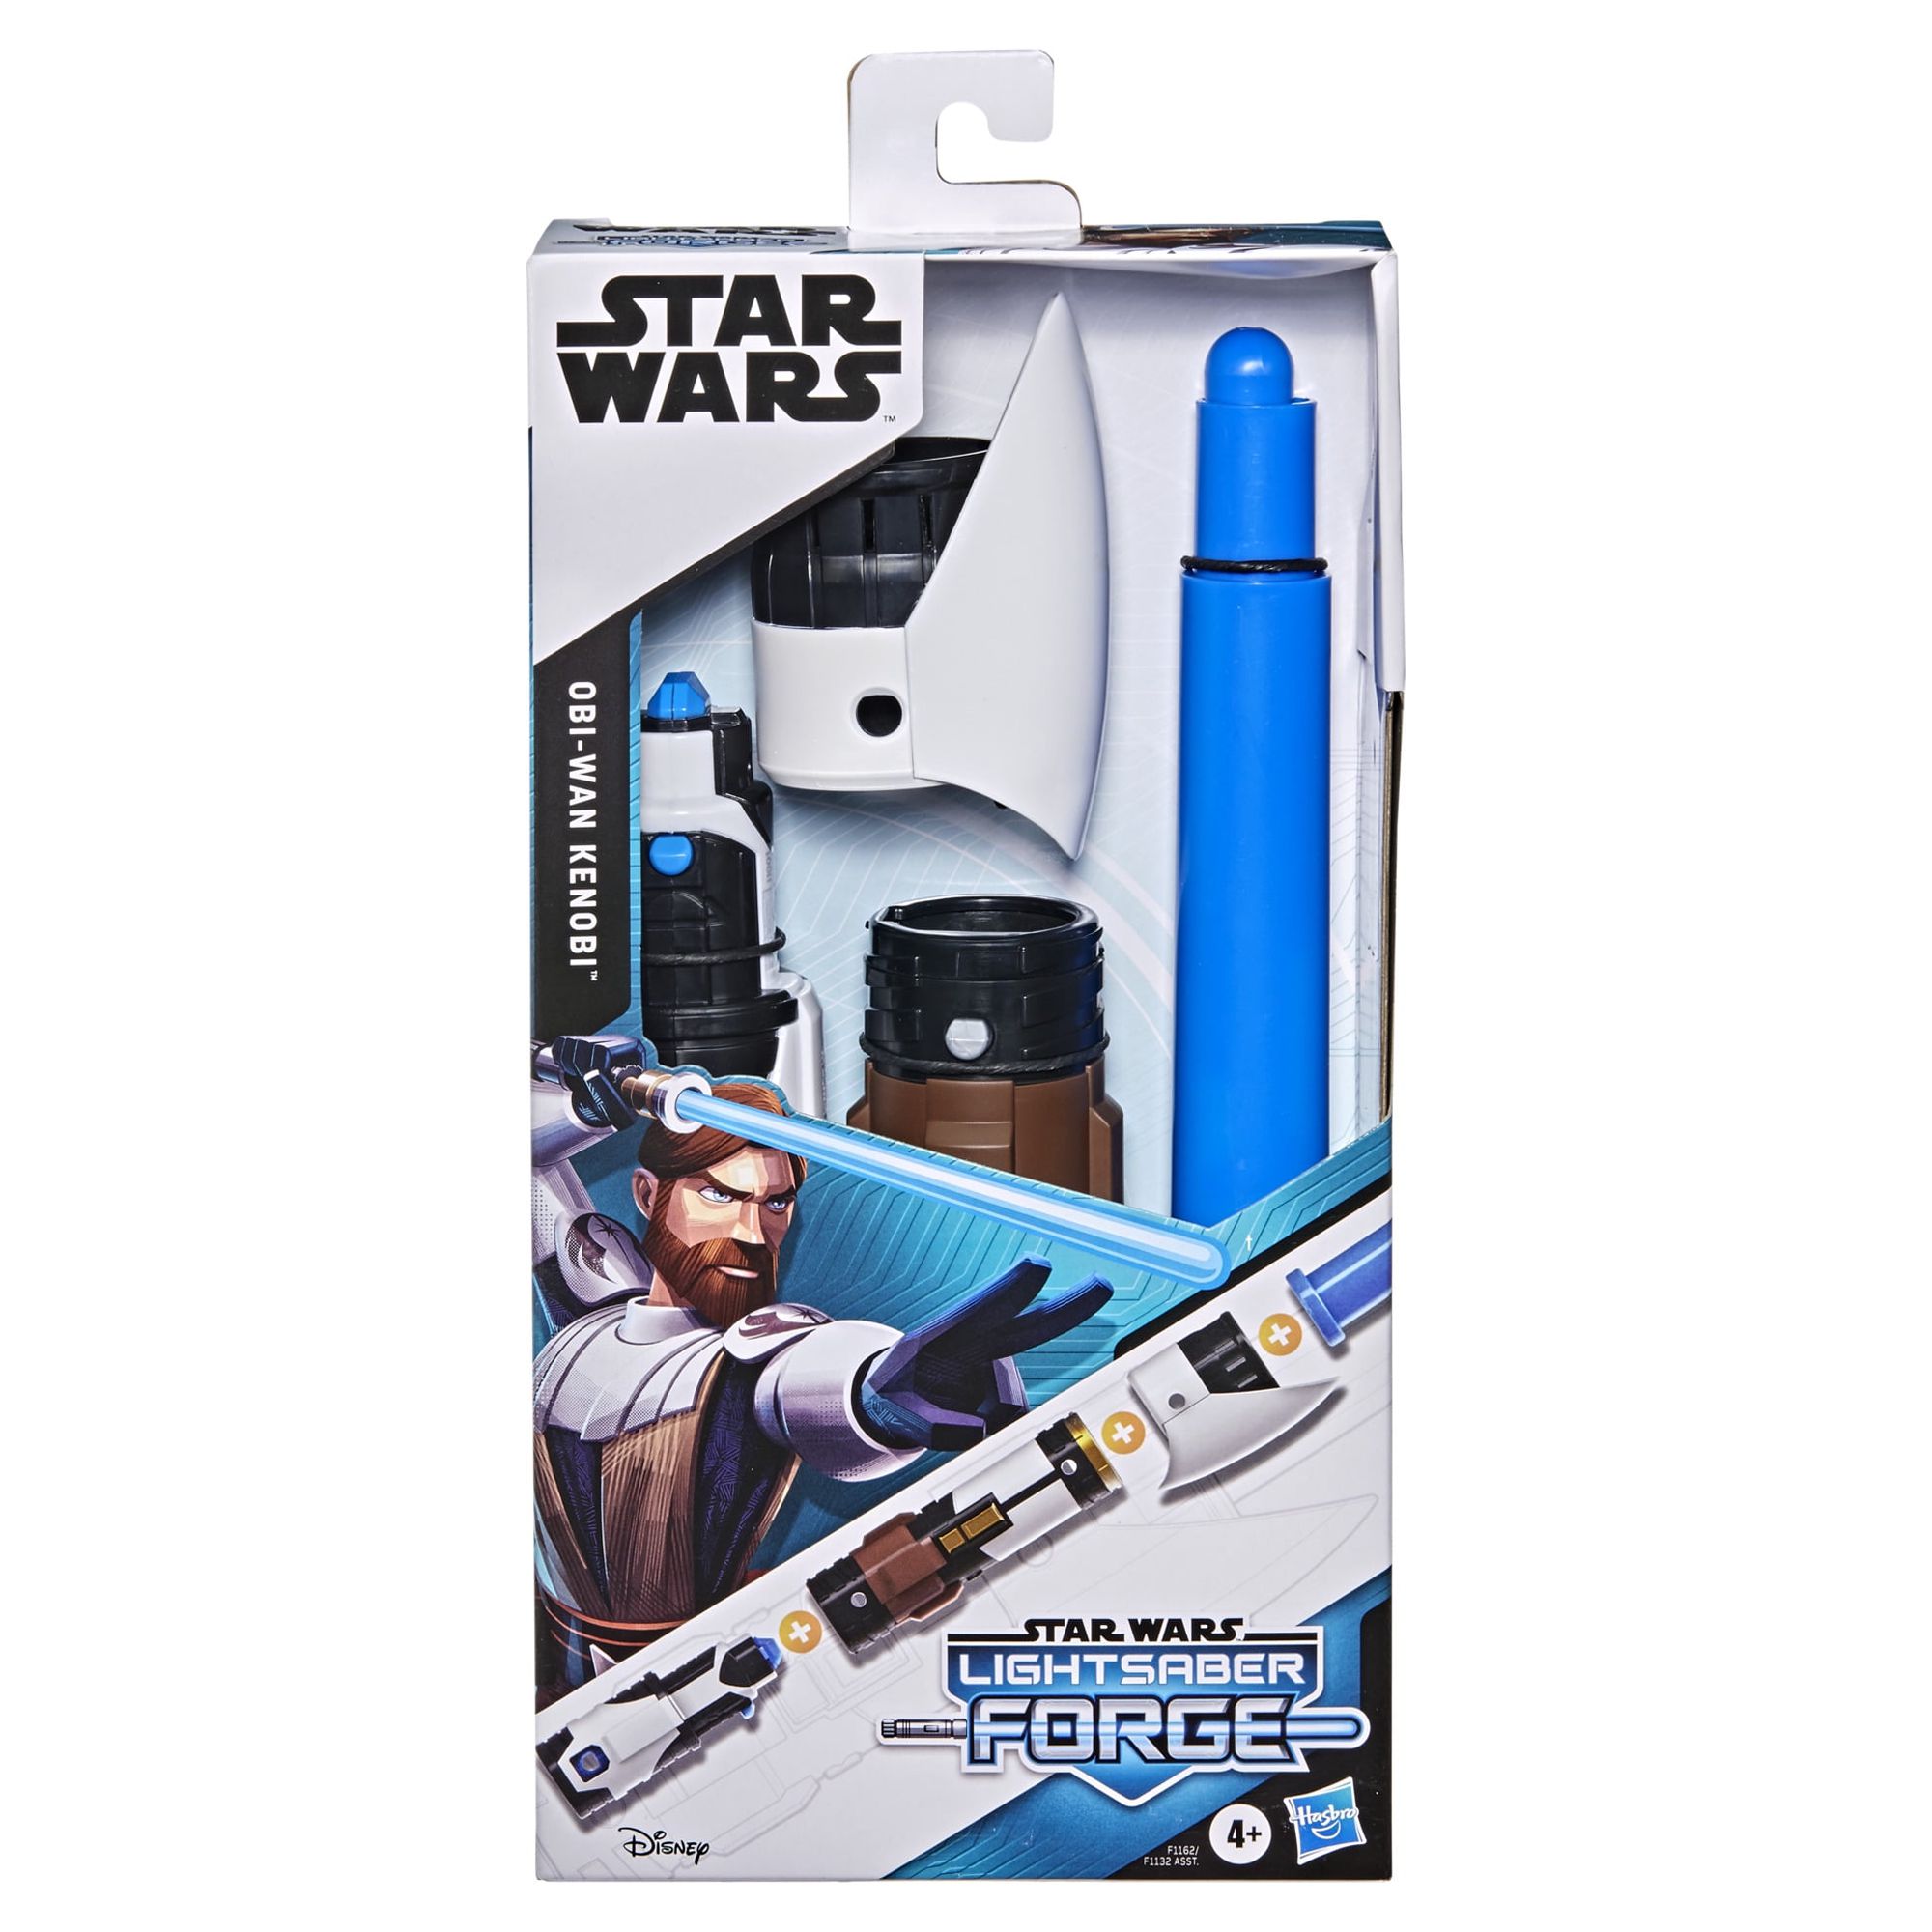 Star Wars Lightsaber Forge Obi-Wan Kenobi Blue Lightsaber, Roleplay Toy - image 3 of 13